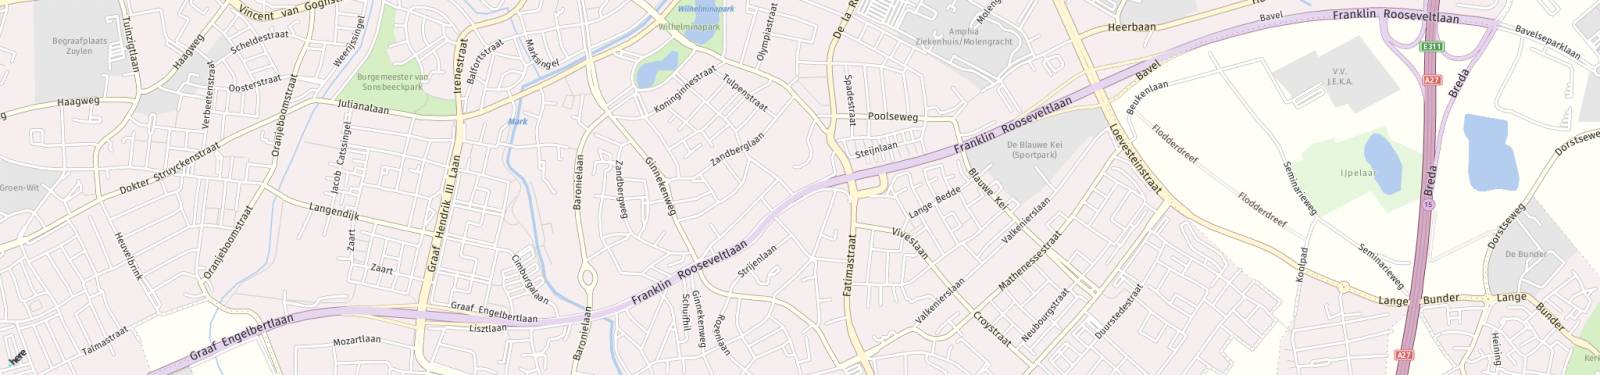 Kaart met locatie Huurwoning Franklin Rooseveltlaan